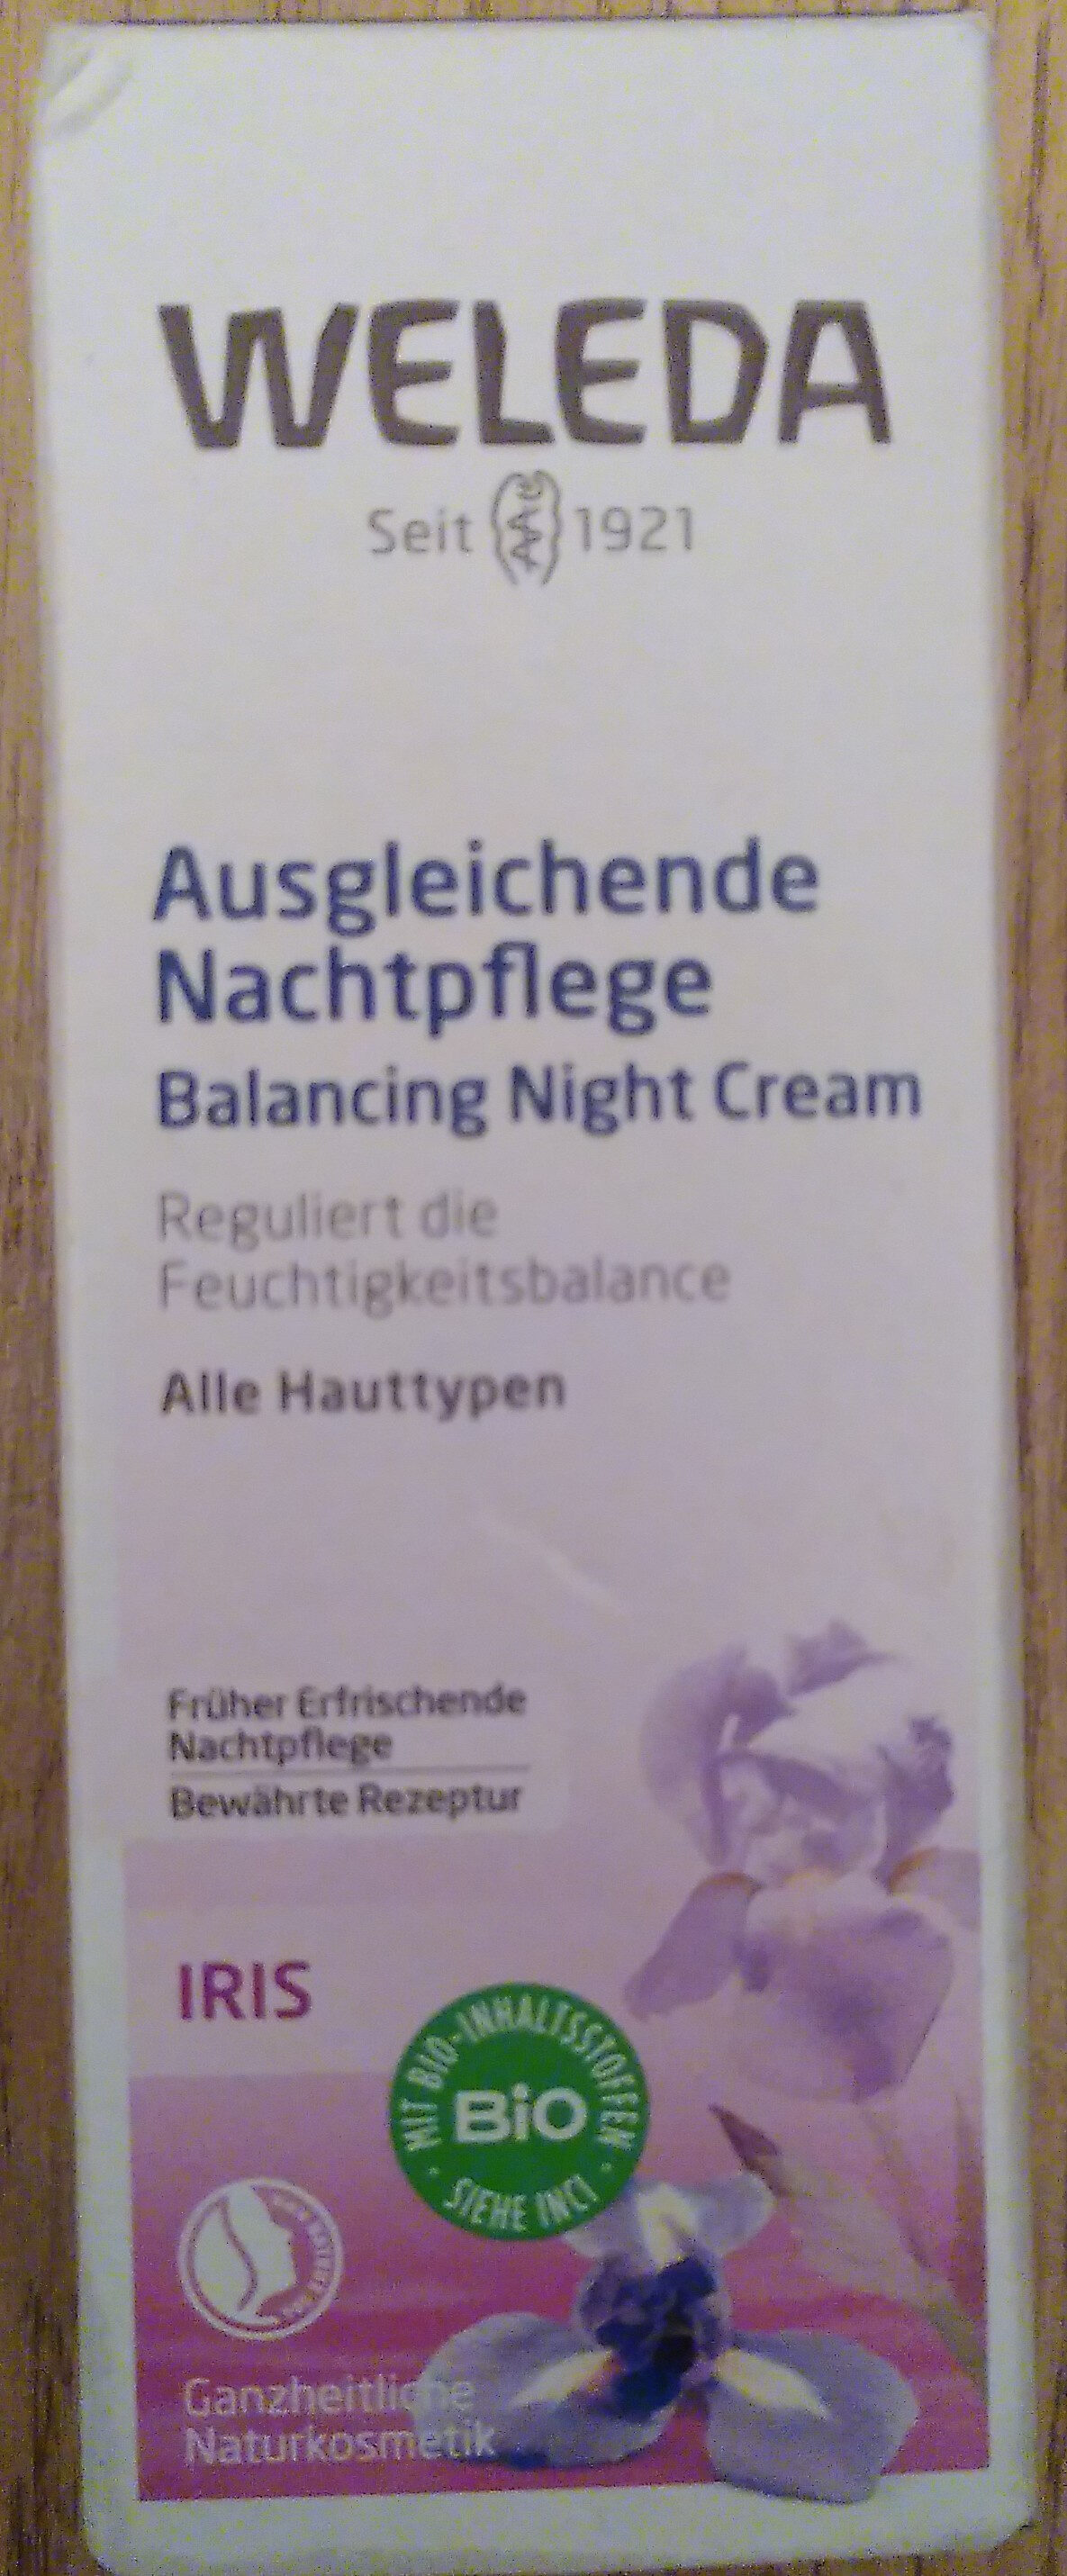 Ausgleichende Nachtpflege - Produkt - de